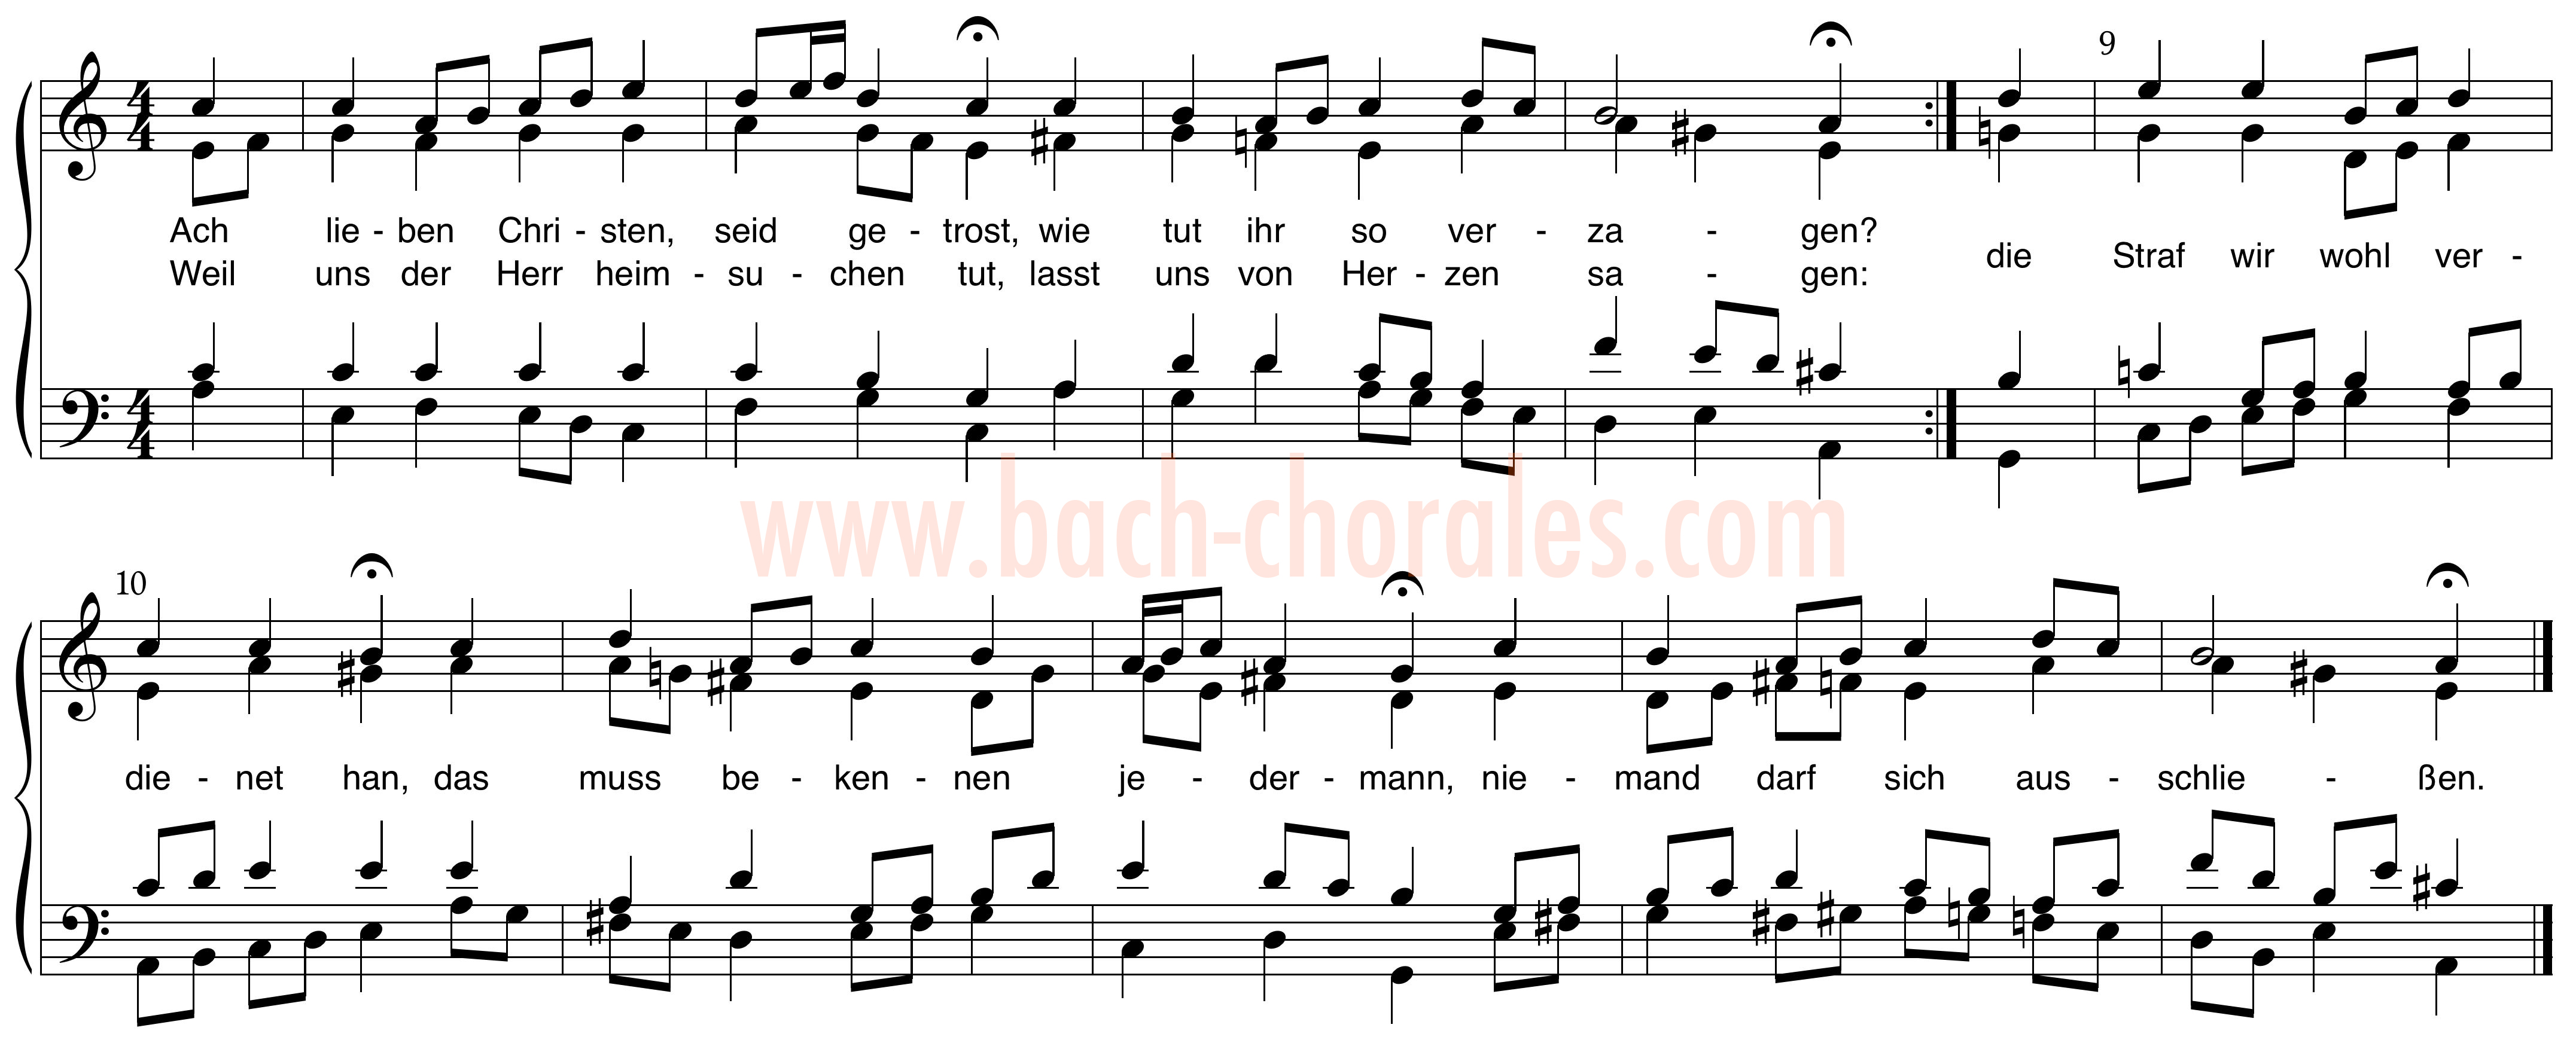 notenbeeld BWV 256 op https://www.bach-chorales.com/